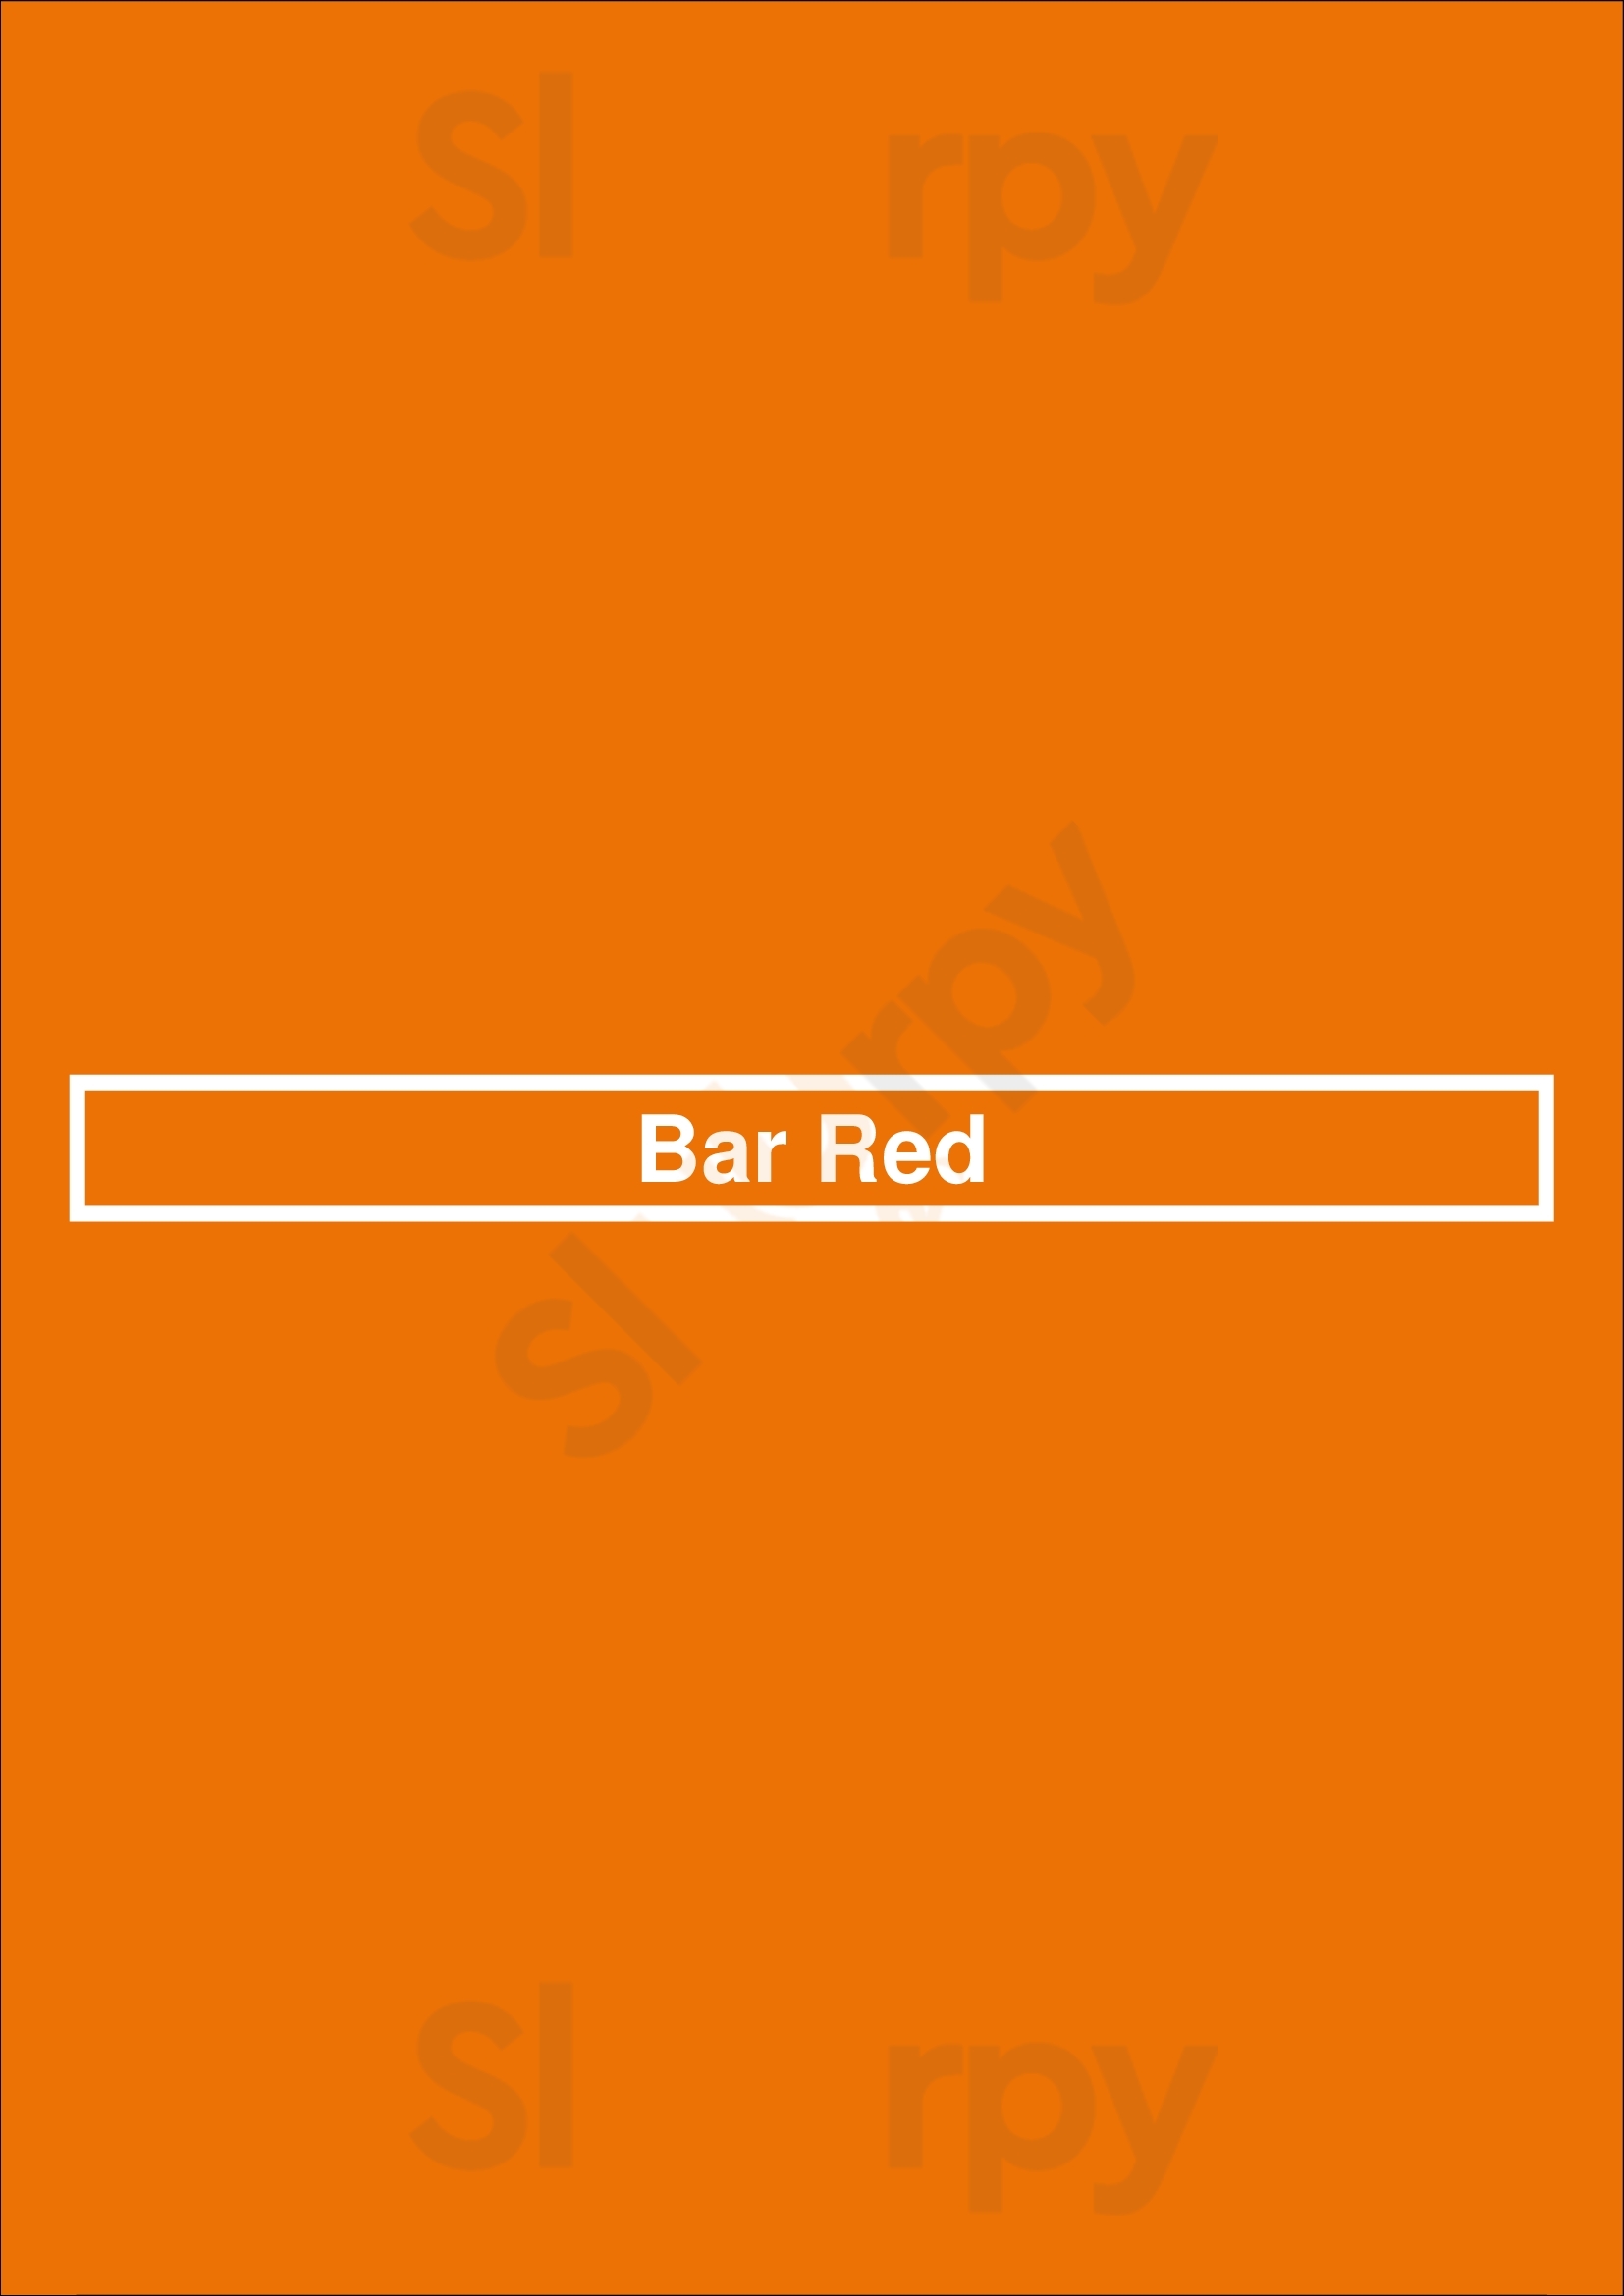 Bar Red Denver Menu - 1